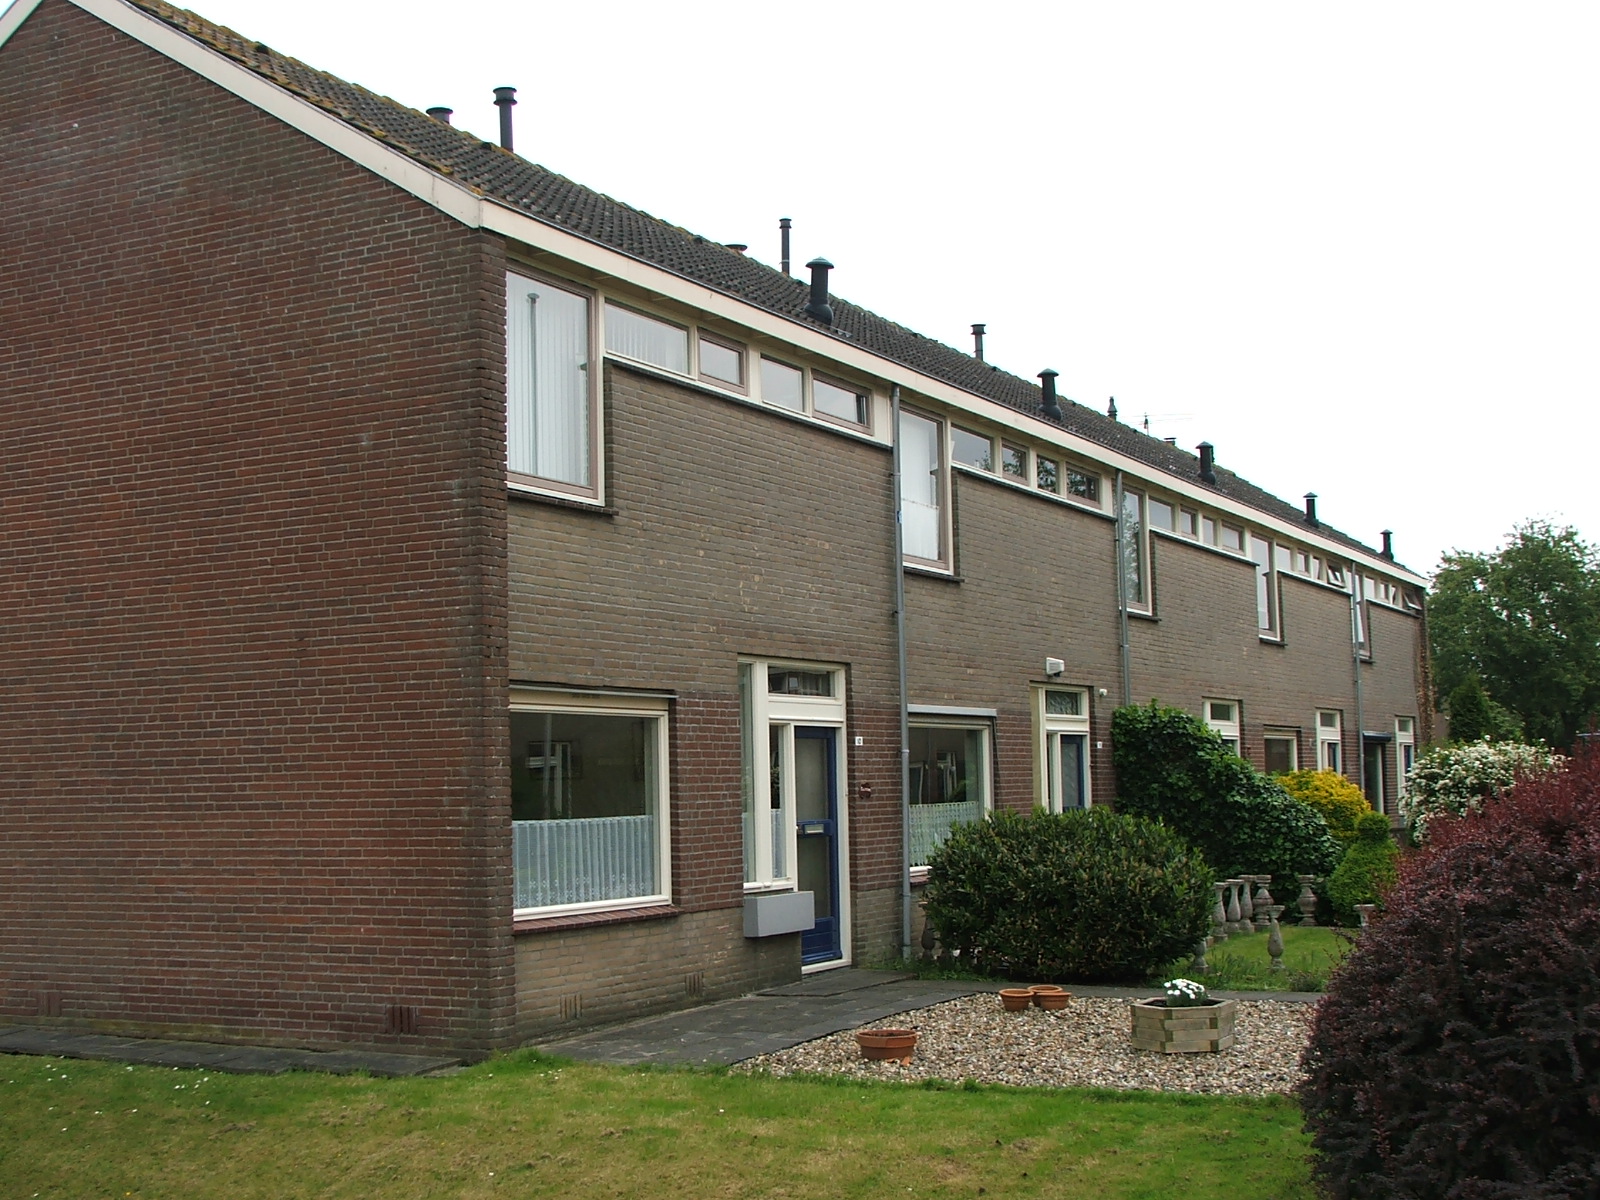 Prunusstraat 10, 2451 XP Leimuiden, Nederland